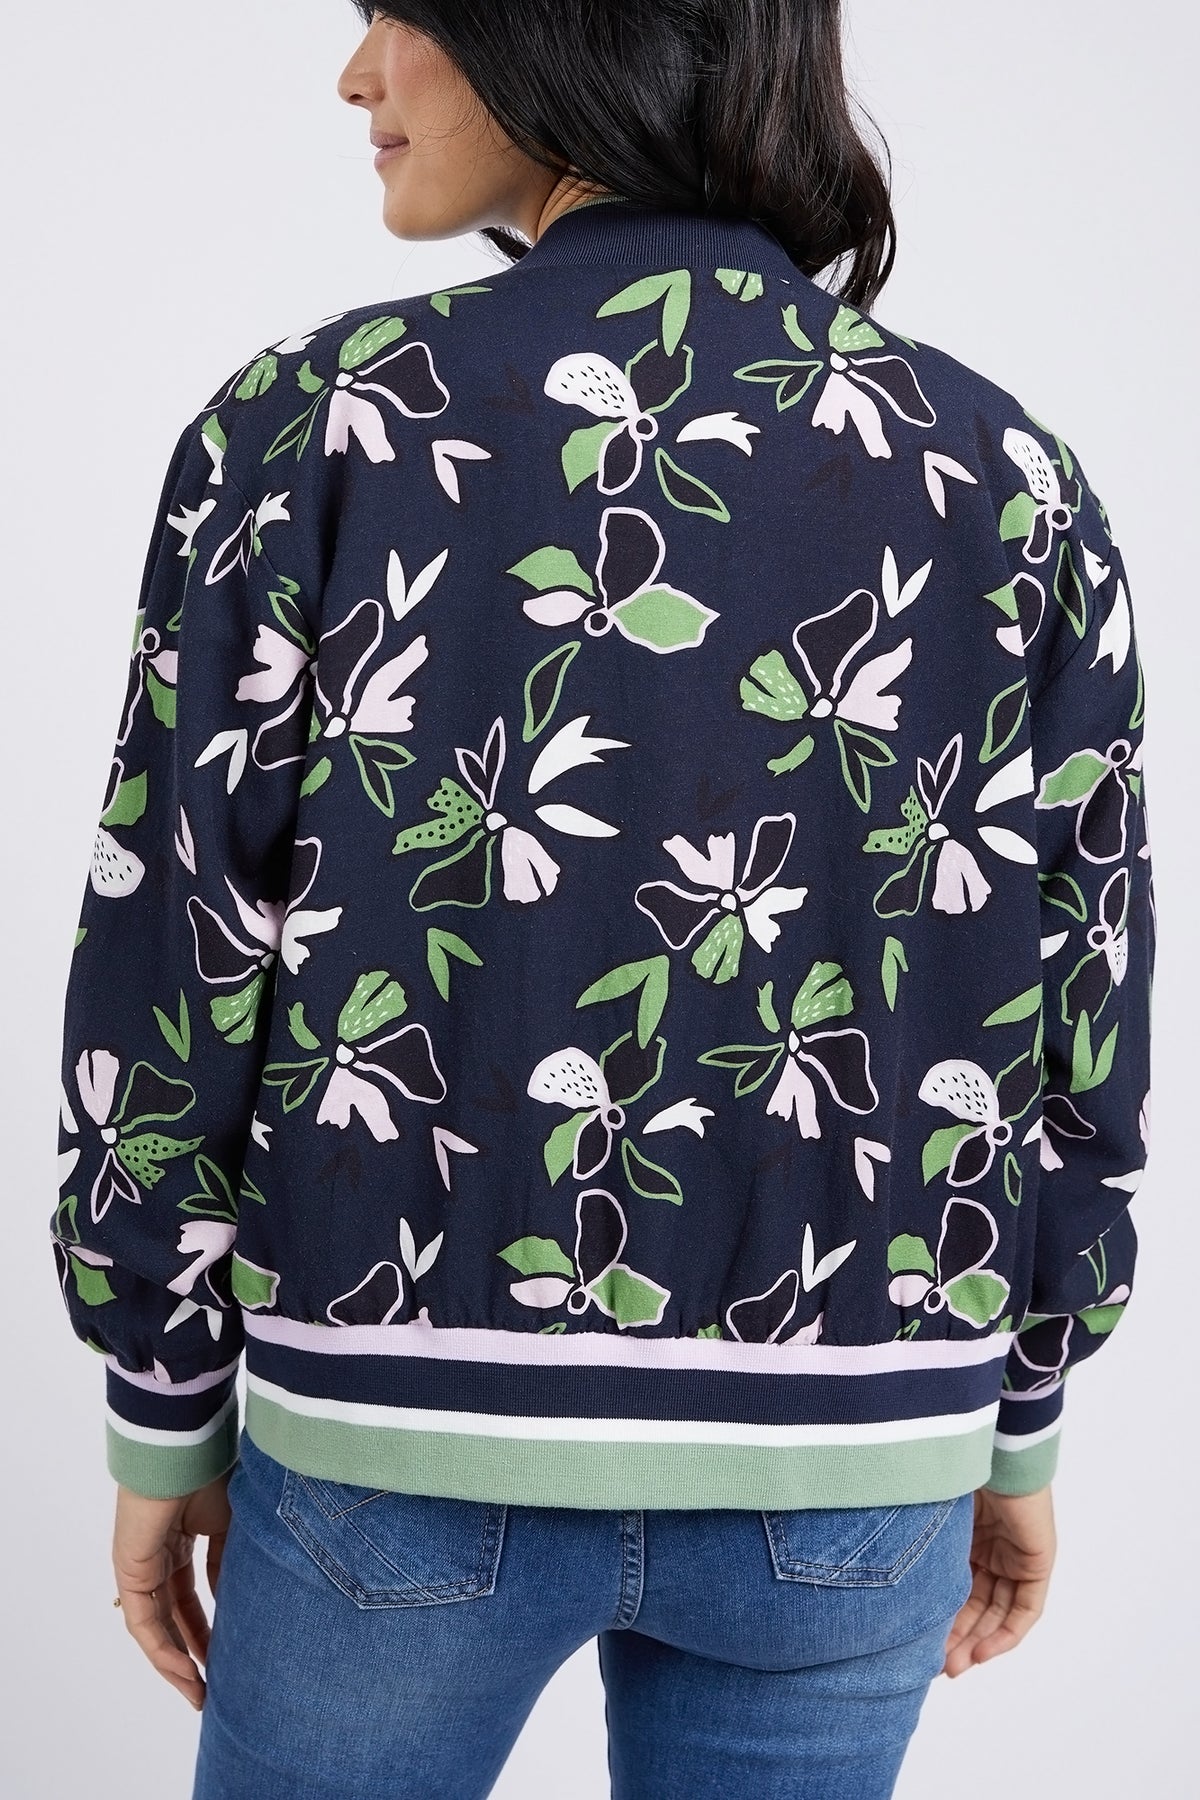 Idyll Floral Print Bomber Jacket